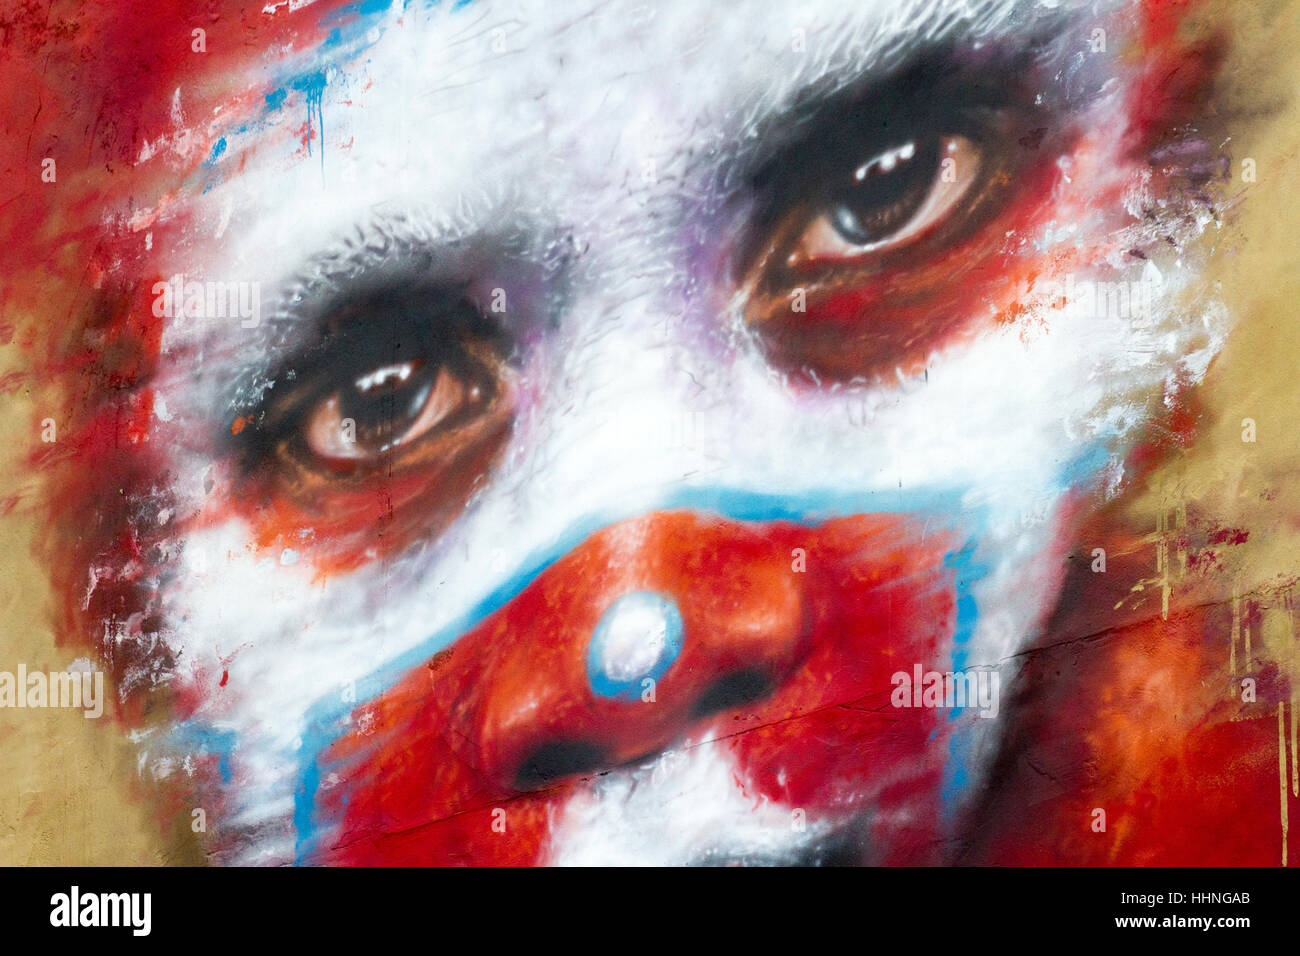 Stile africano dipinto di rosso voodoo-di fronte scary clown graffiti, Manchester, Regno Unito Foto Stock